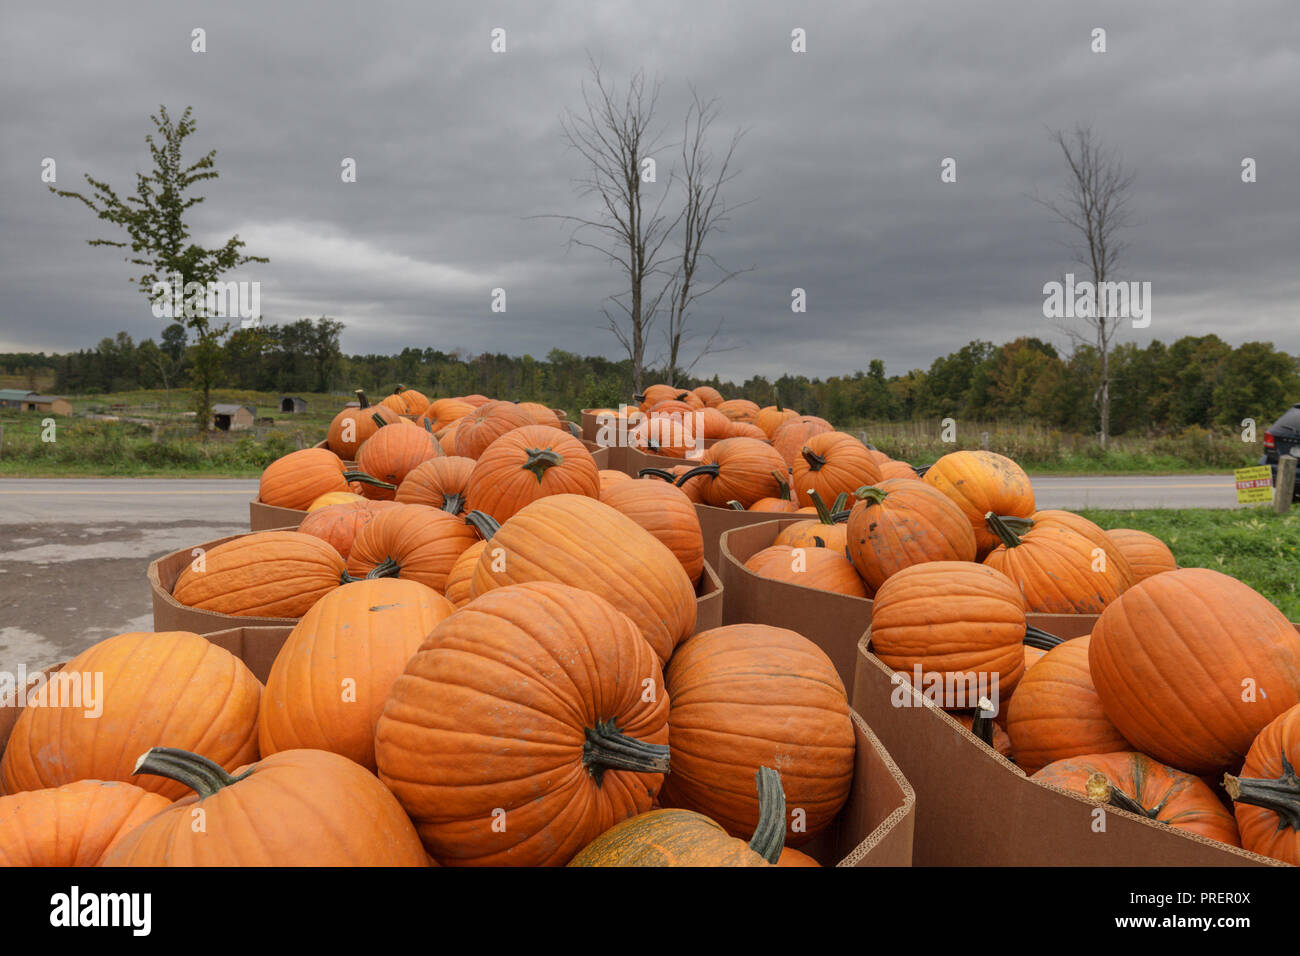 Minden, Mohawk Valley, New York State: Herbst Ernte Kürbisse sind in von den Meilen herum für die Vorderachs-verankerungsösen Fordsbush farm Auktion produzieren. Stockfoto